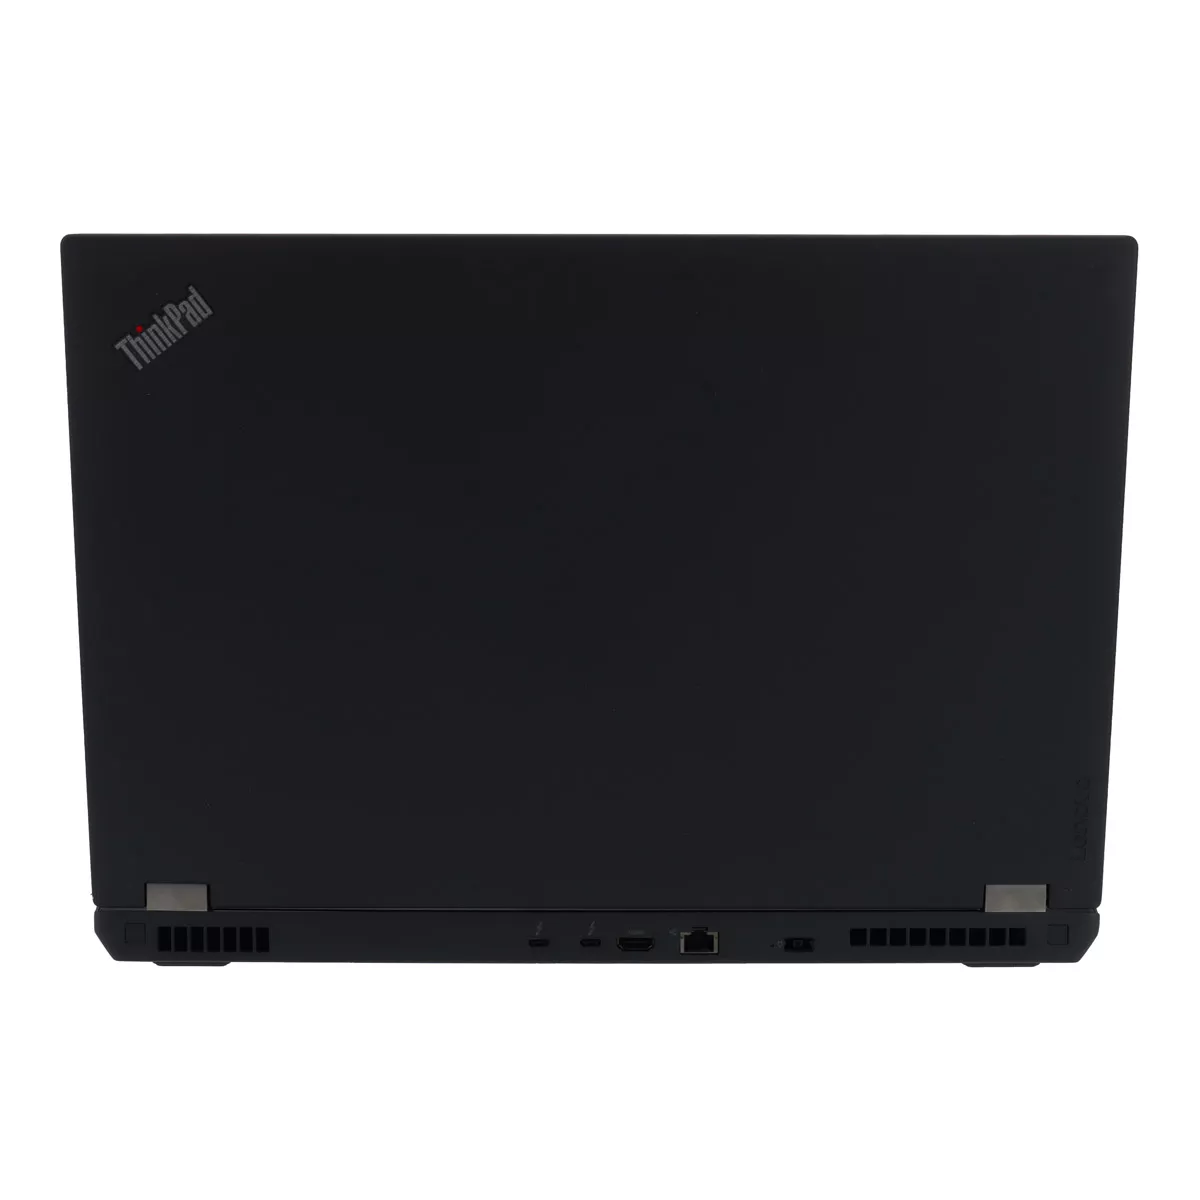 Lenovo ThinkPad P70 Core i7 6700HQ nVidia Quadro M600M 16 GB 500 GB M.2 SSD Webcam A